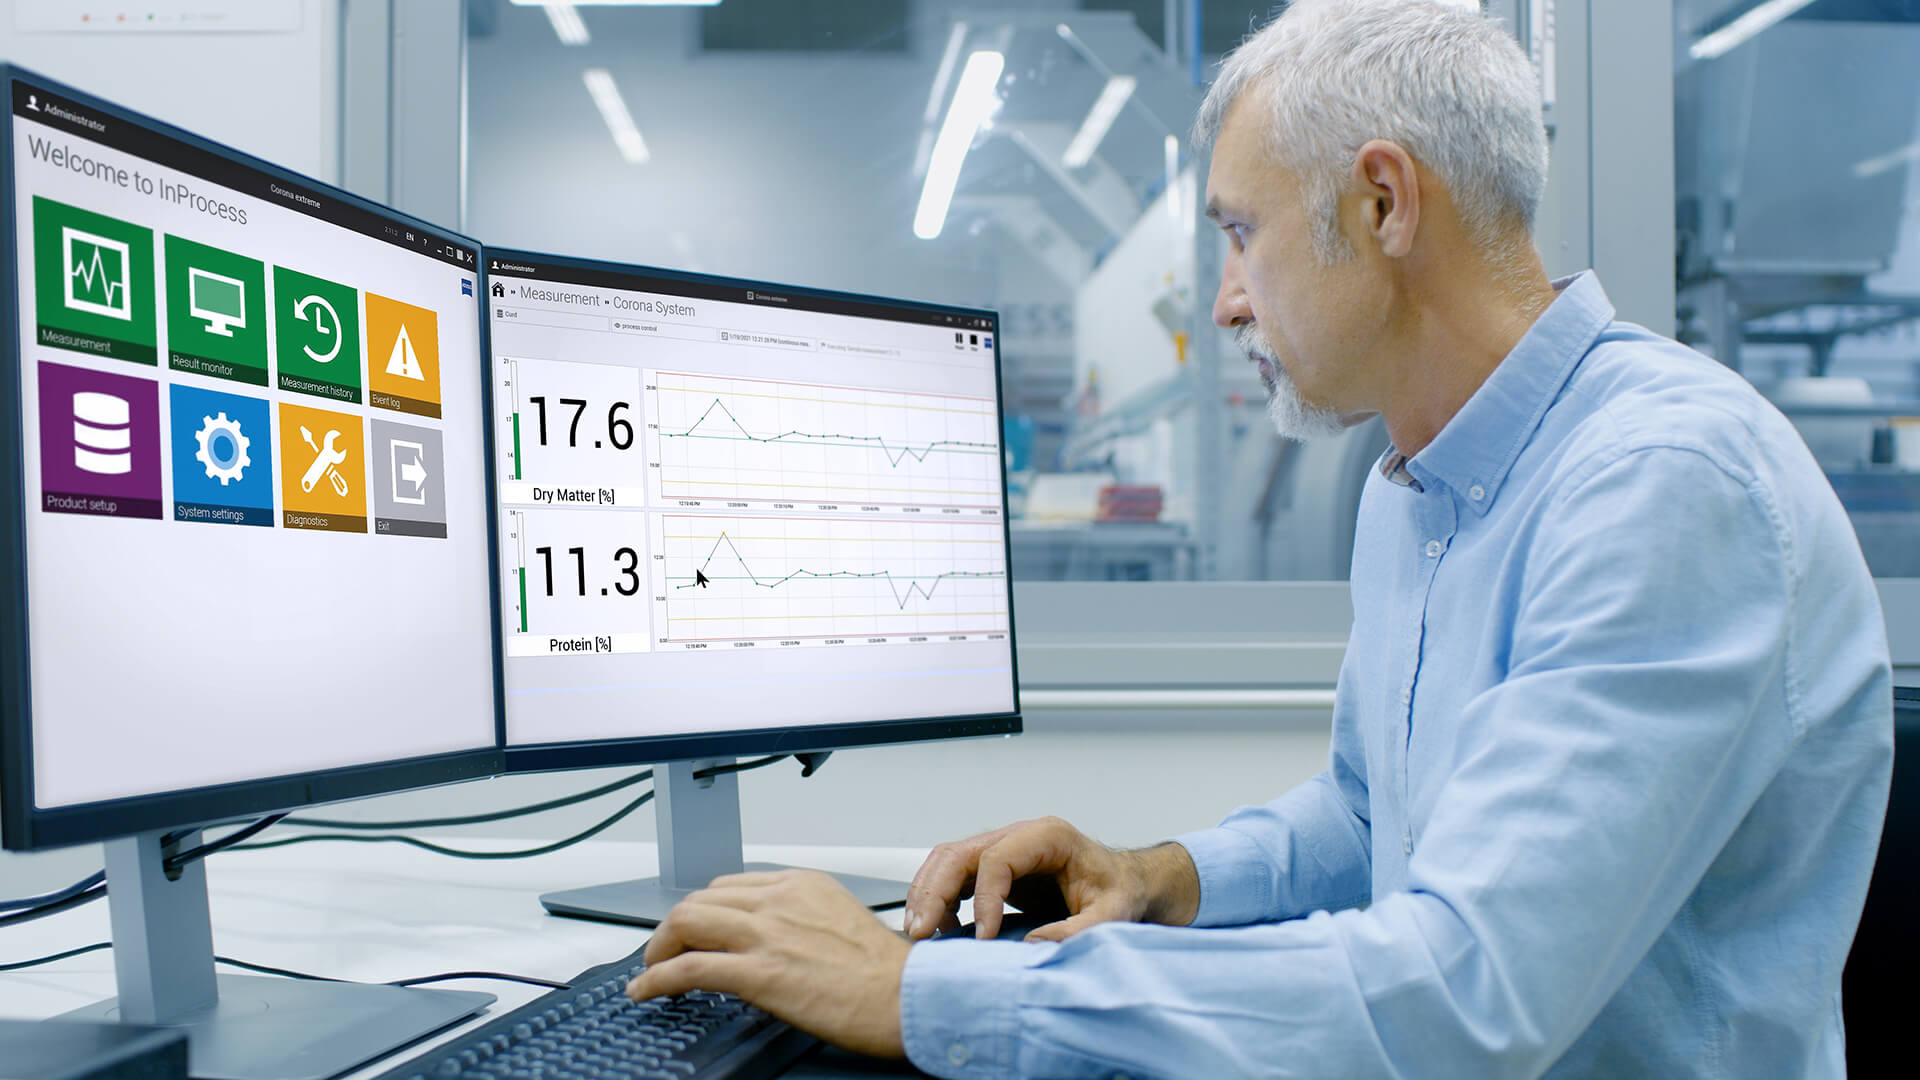 工程师坐在其办公室生产环境中的电脑前，屏幕上显示的是inprocess软件的界面 